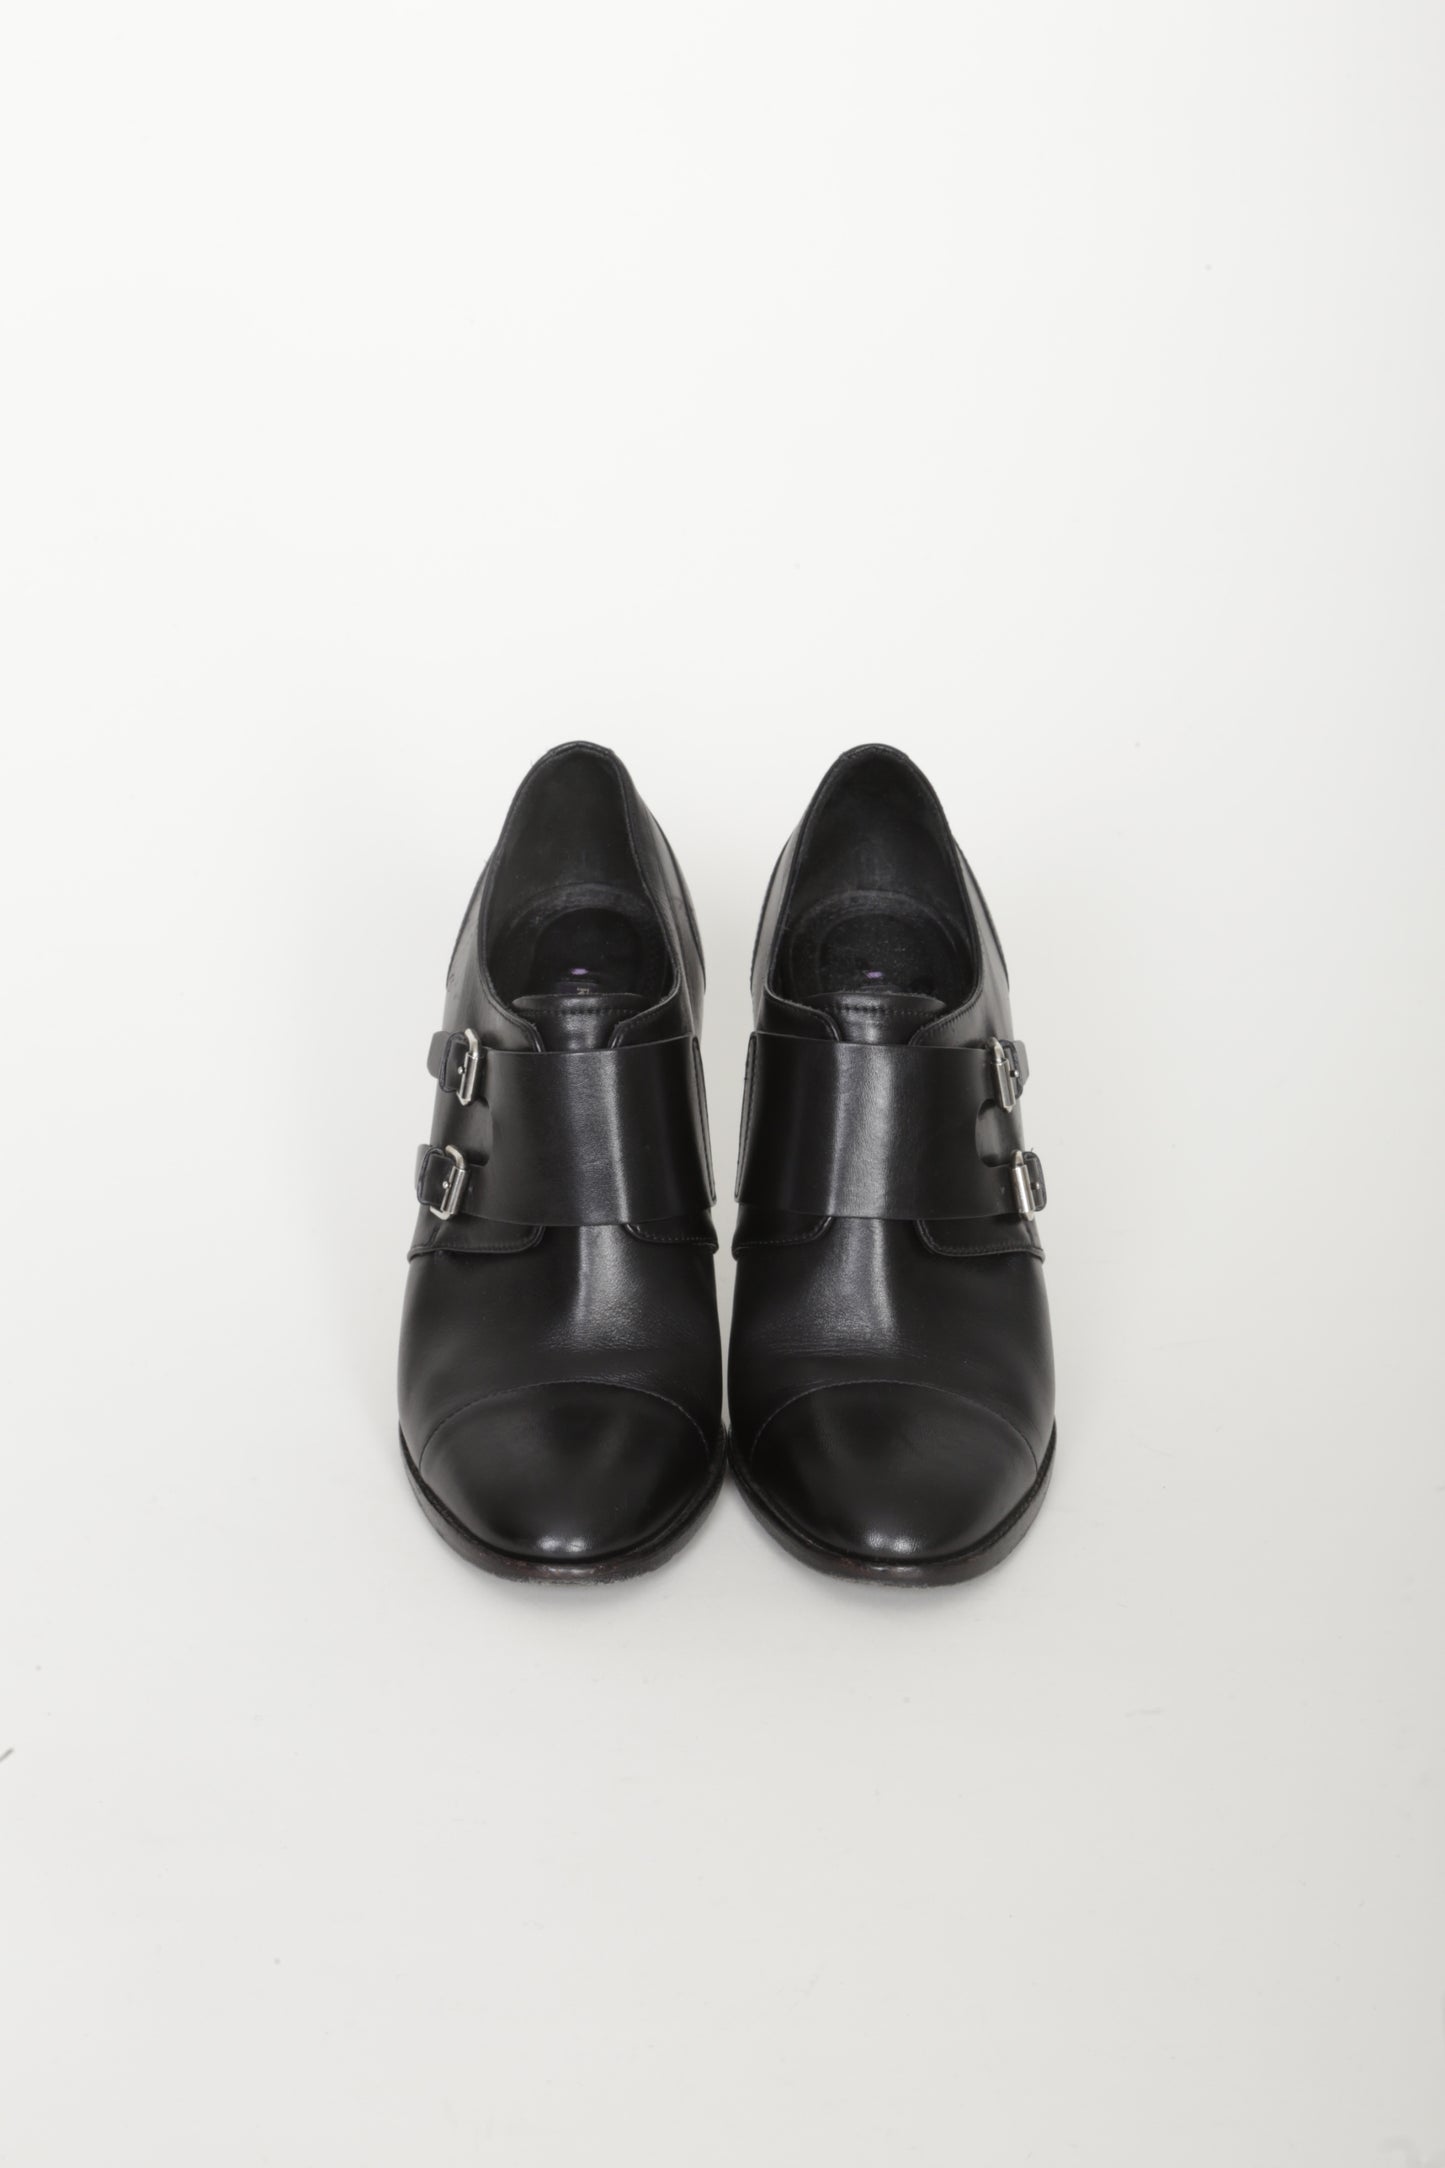 Ralph Lauren Collection Womens Black Heels Size US 7.5